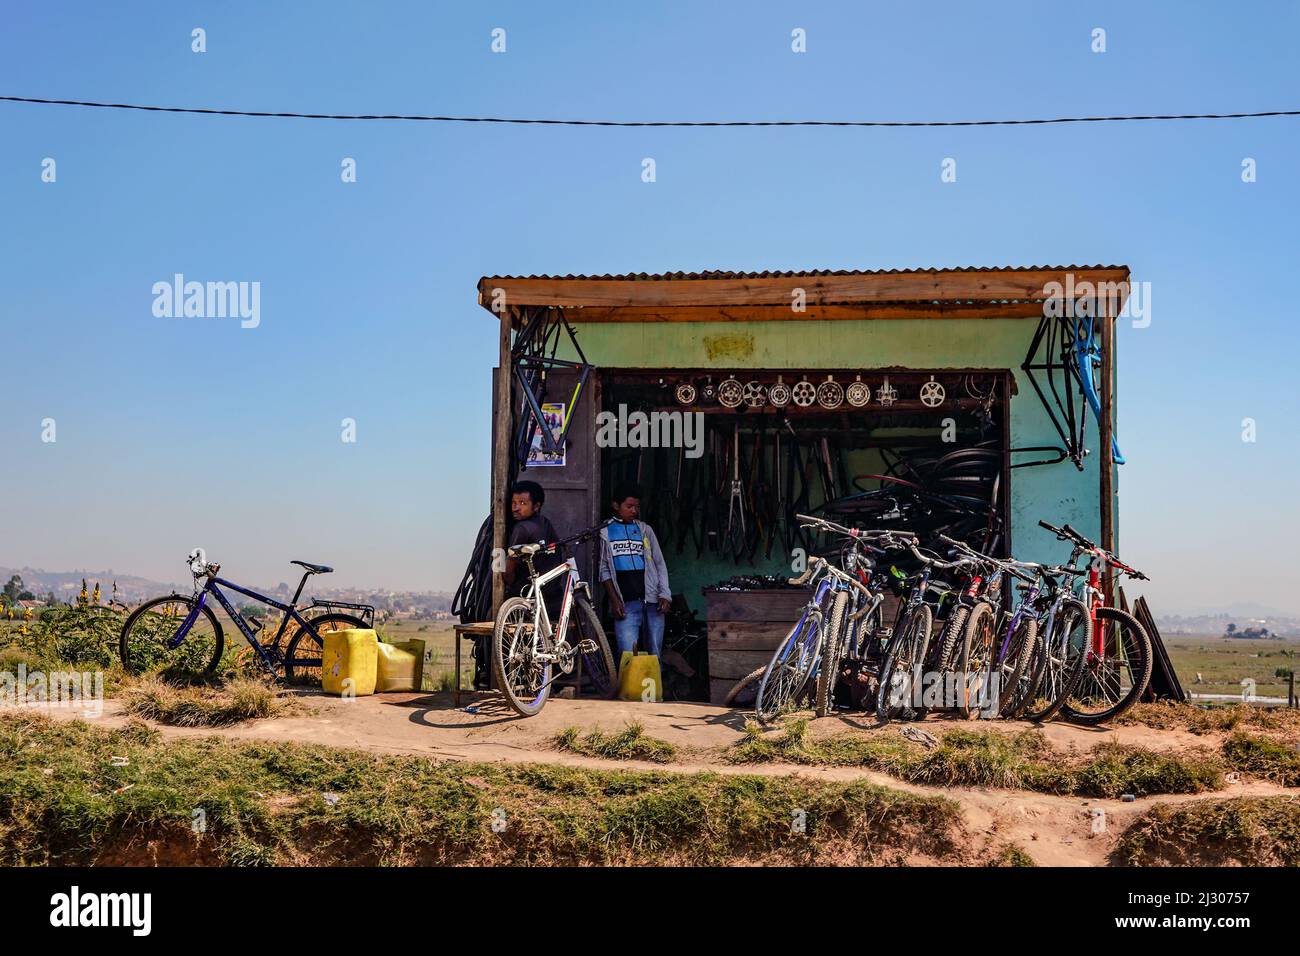 Antananarivo, Madagaskar - 07. Mai 2019: Kleiner provisorischer Barackenladen mit Fahrradteilen und gebrauchten Fahrrädern in der Nähe der Hauptstraße, zwei madagassische Männer in der Nähe Stockfoto